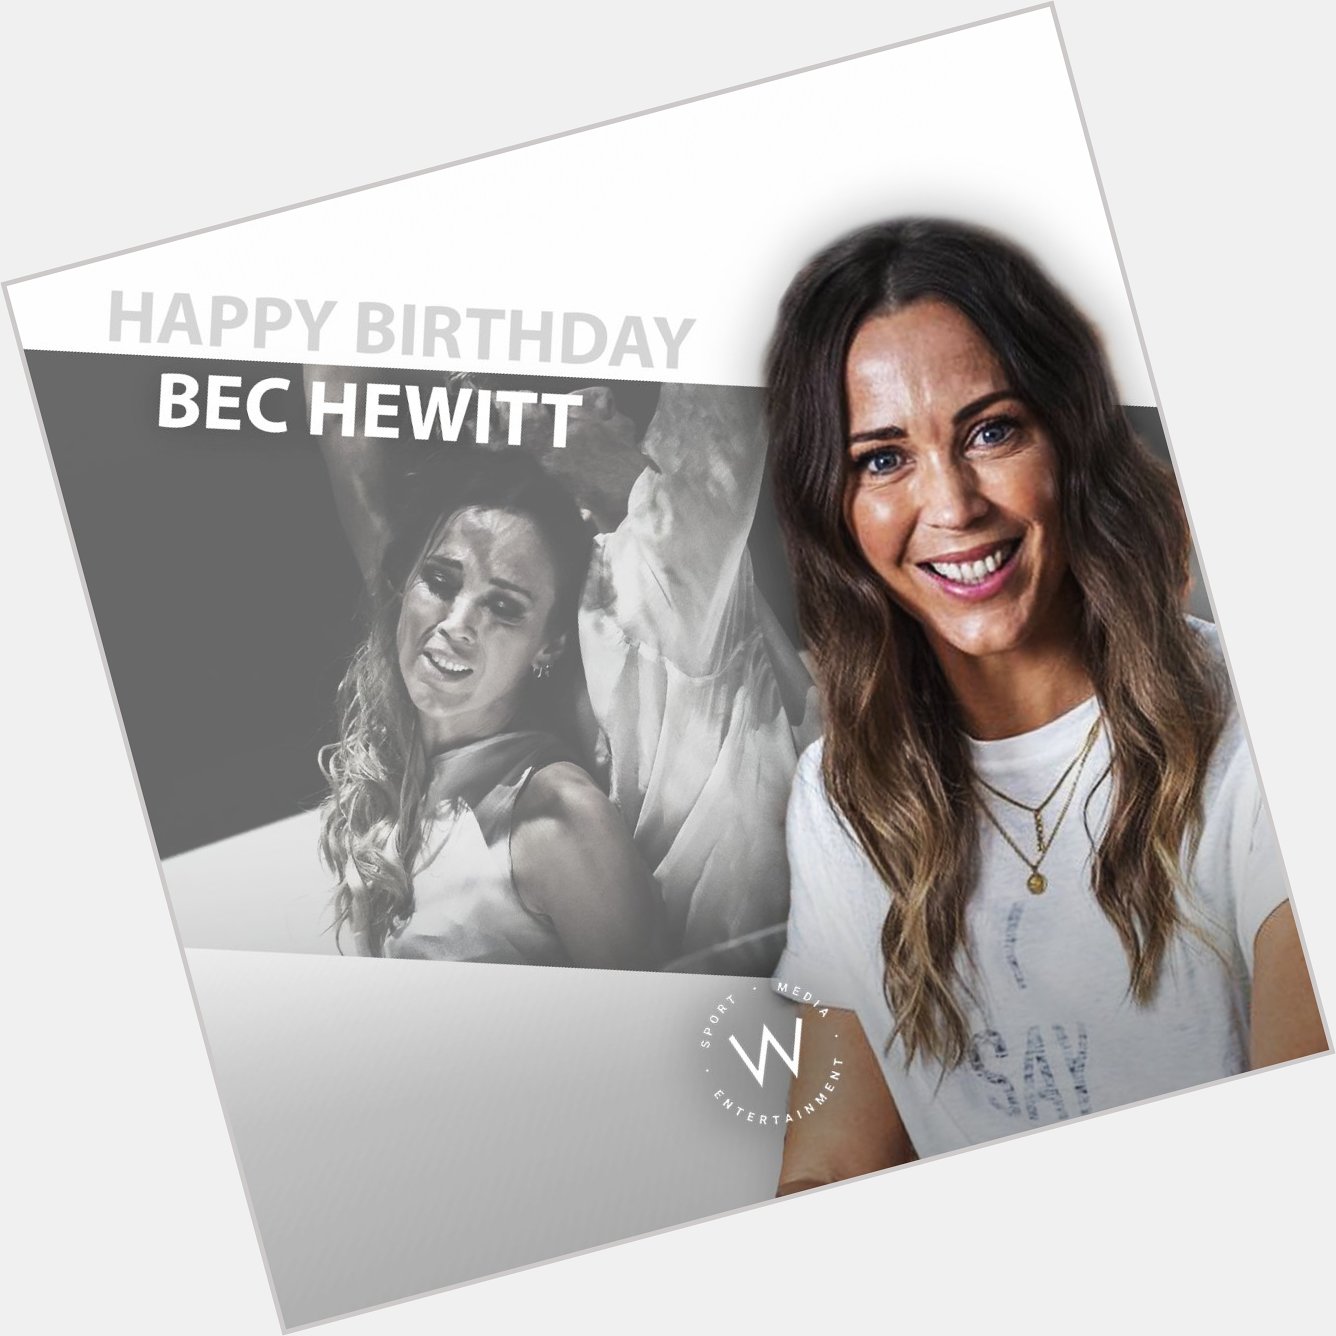 Happy birthday, Bec Hewitt! 